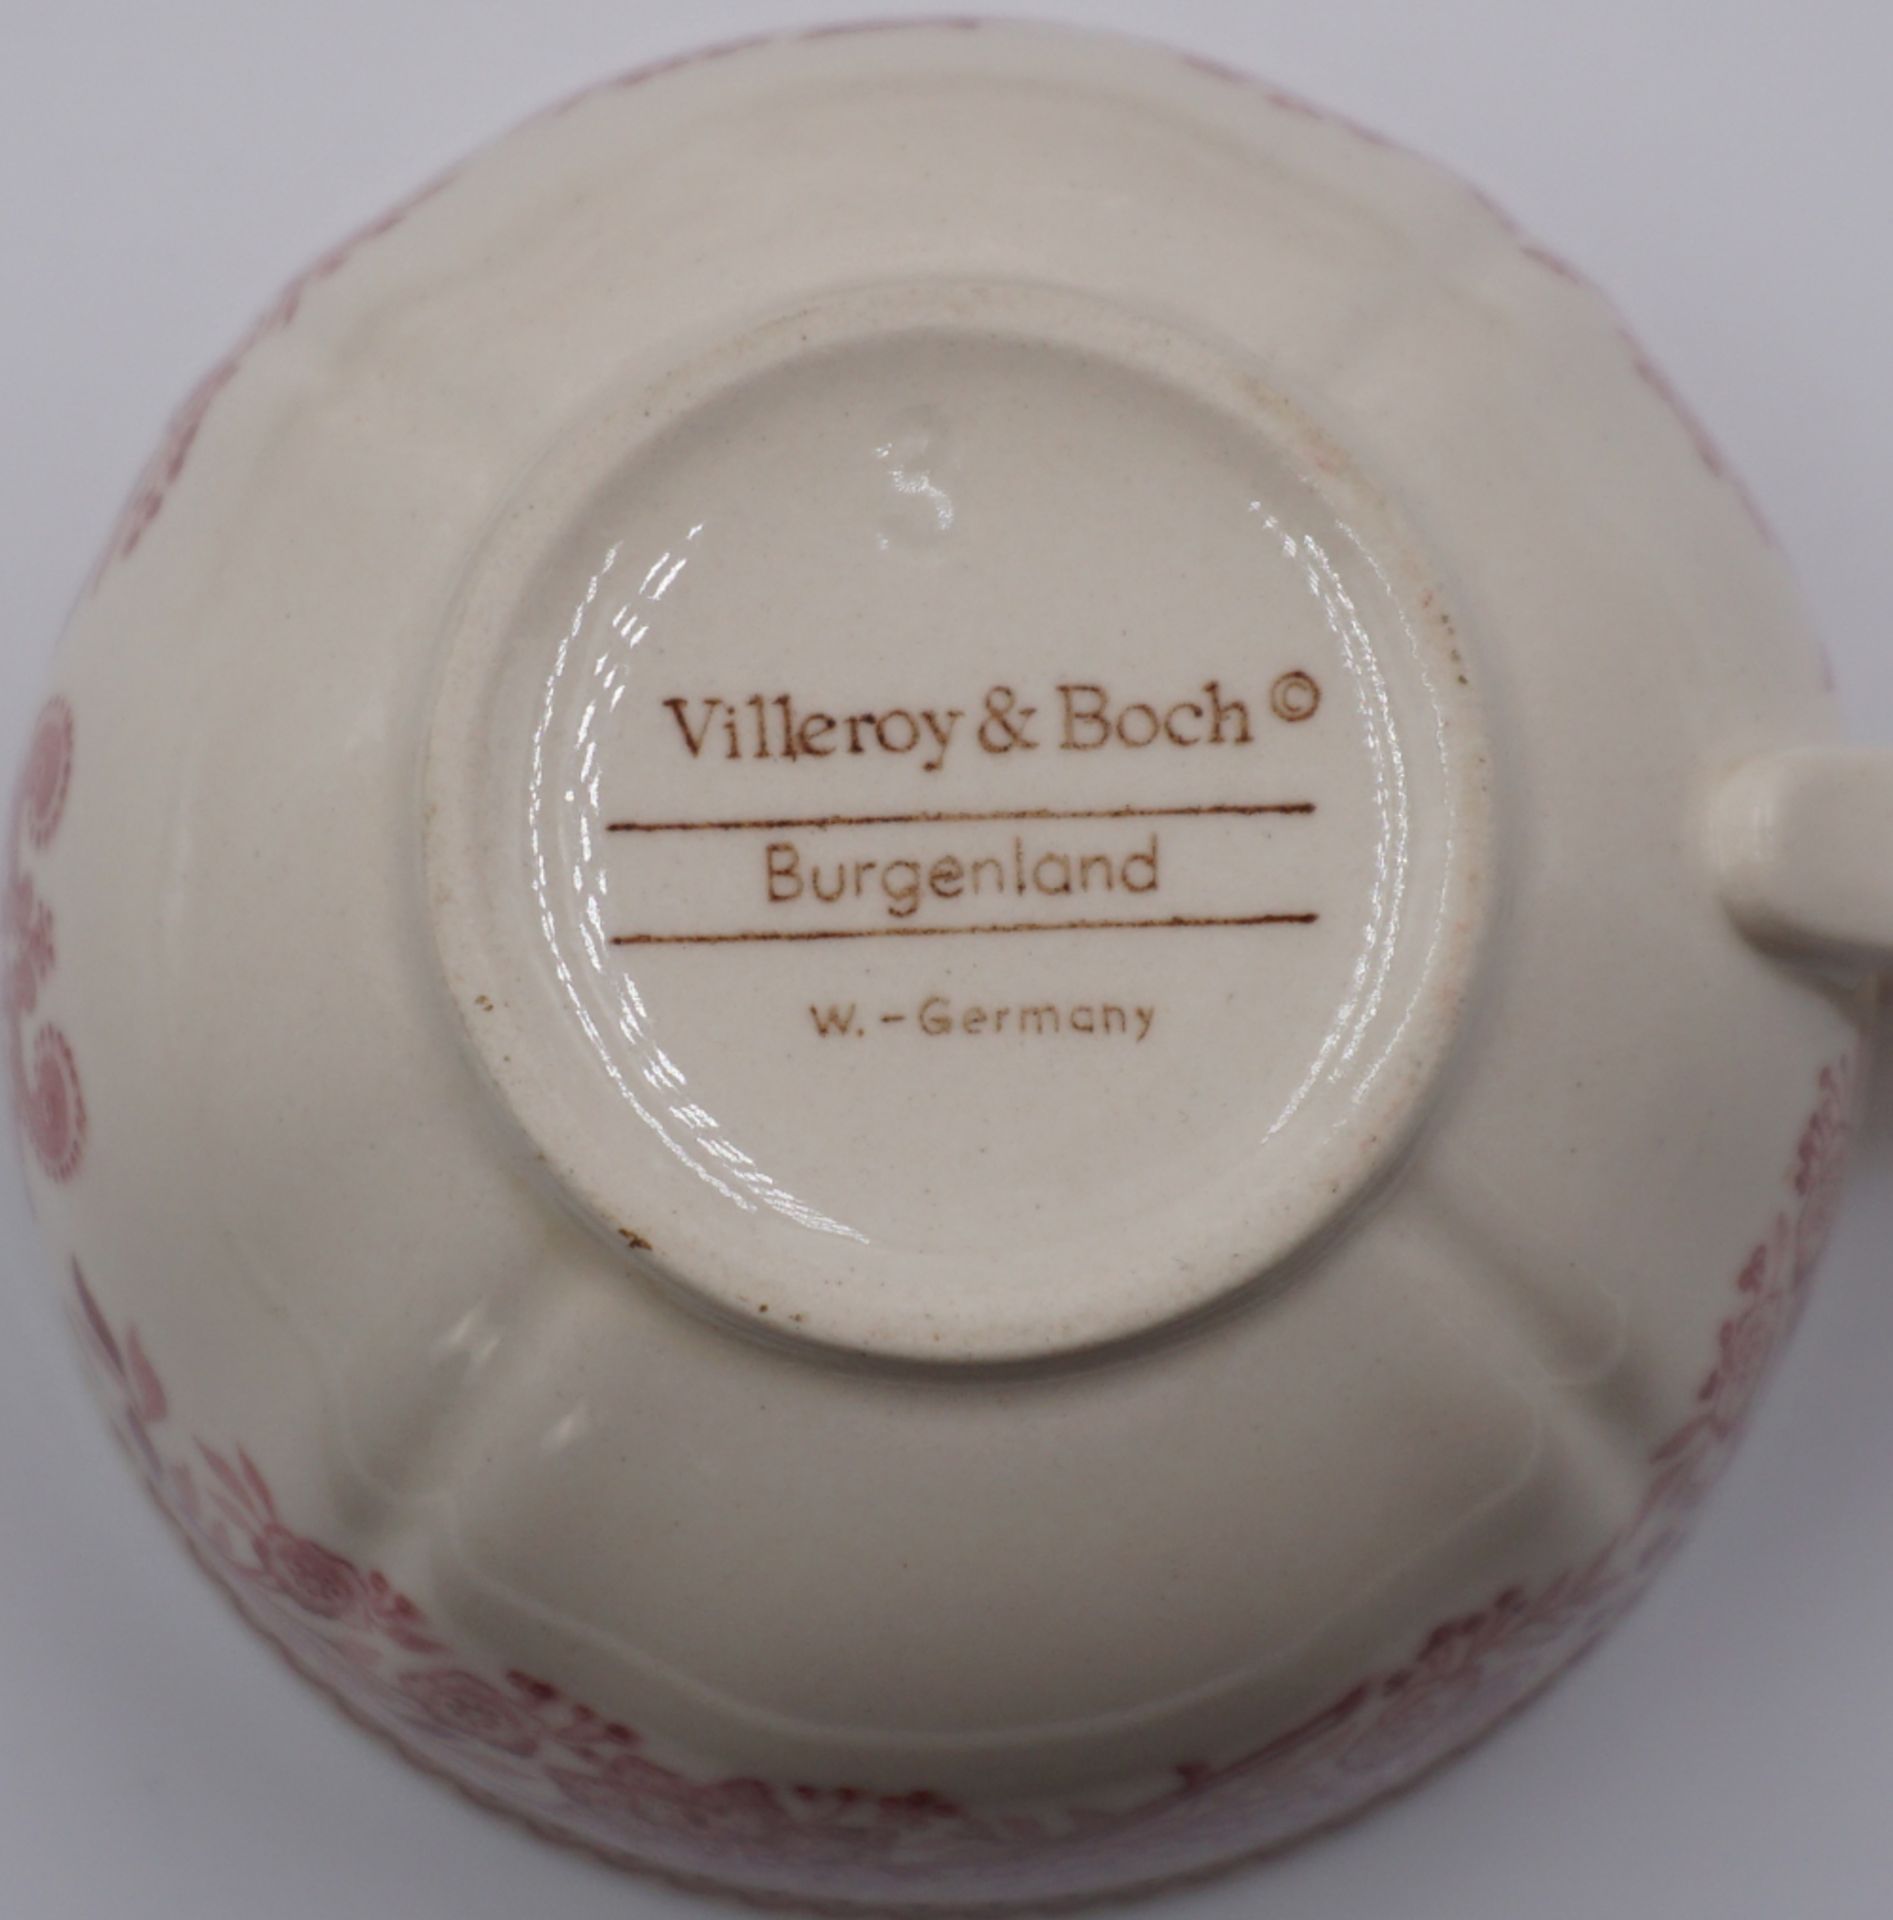 1 Kaffee-/Speiseservice VILLEROY&BOCH "Burgenland" f. ca. 6 Personen mit Platten, Stövchen u.a. ber. - Image 3 of 3